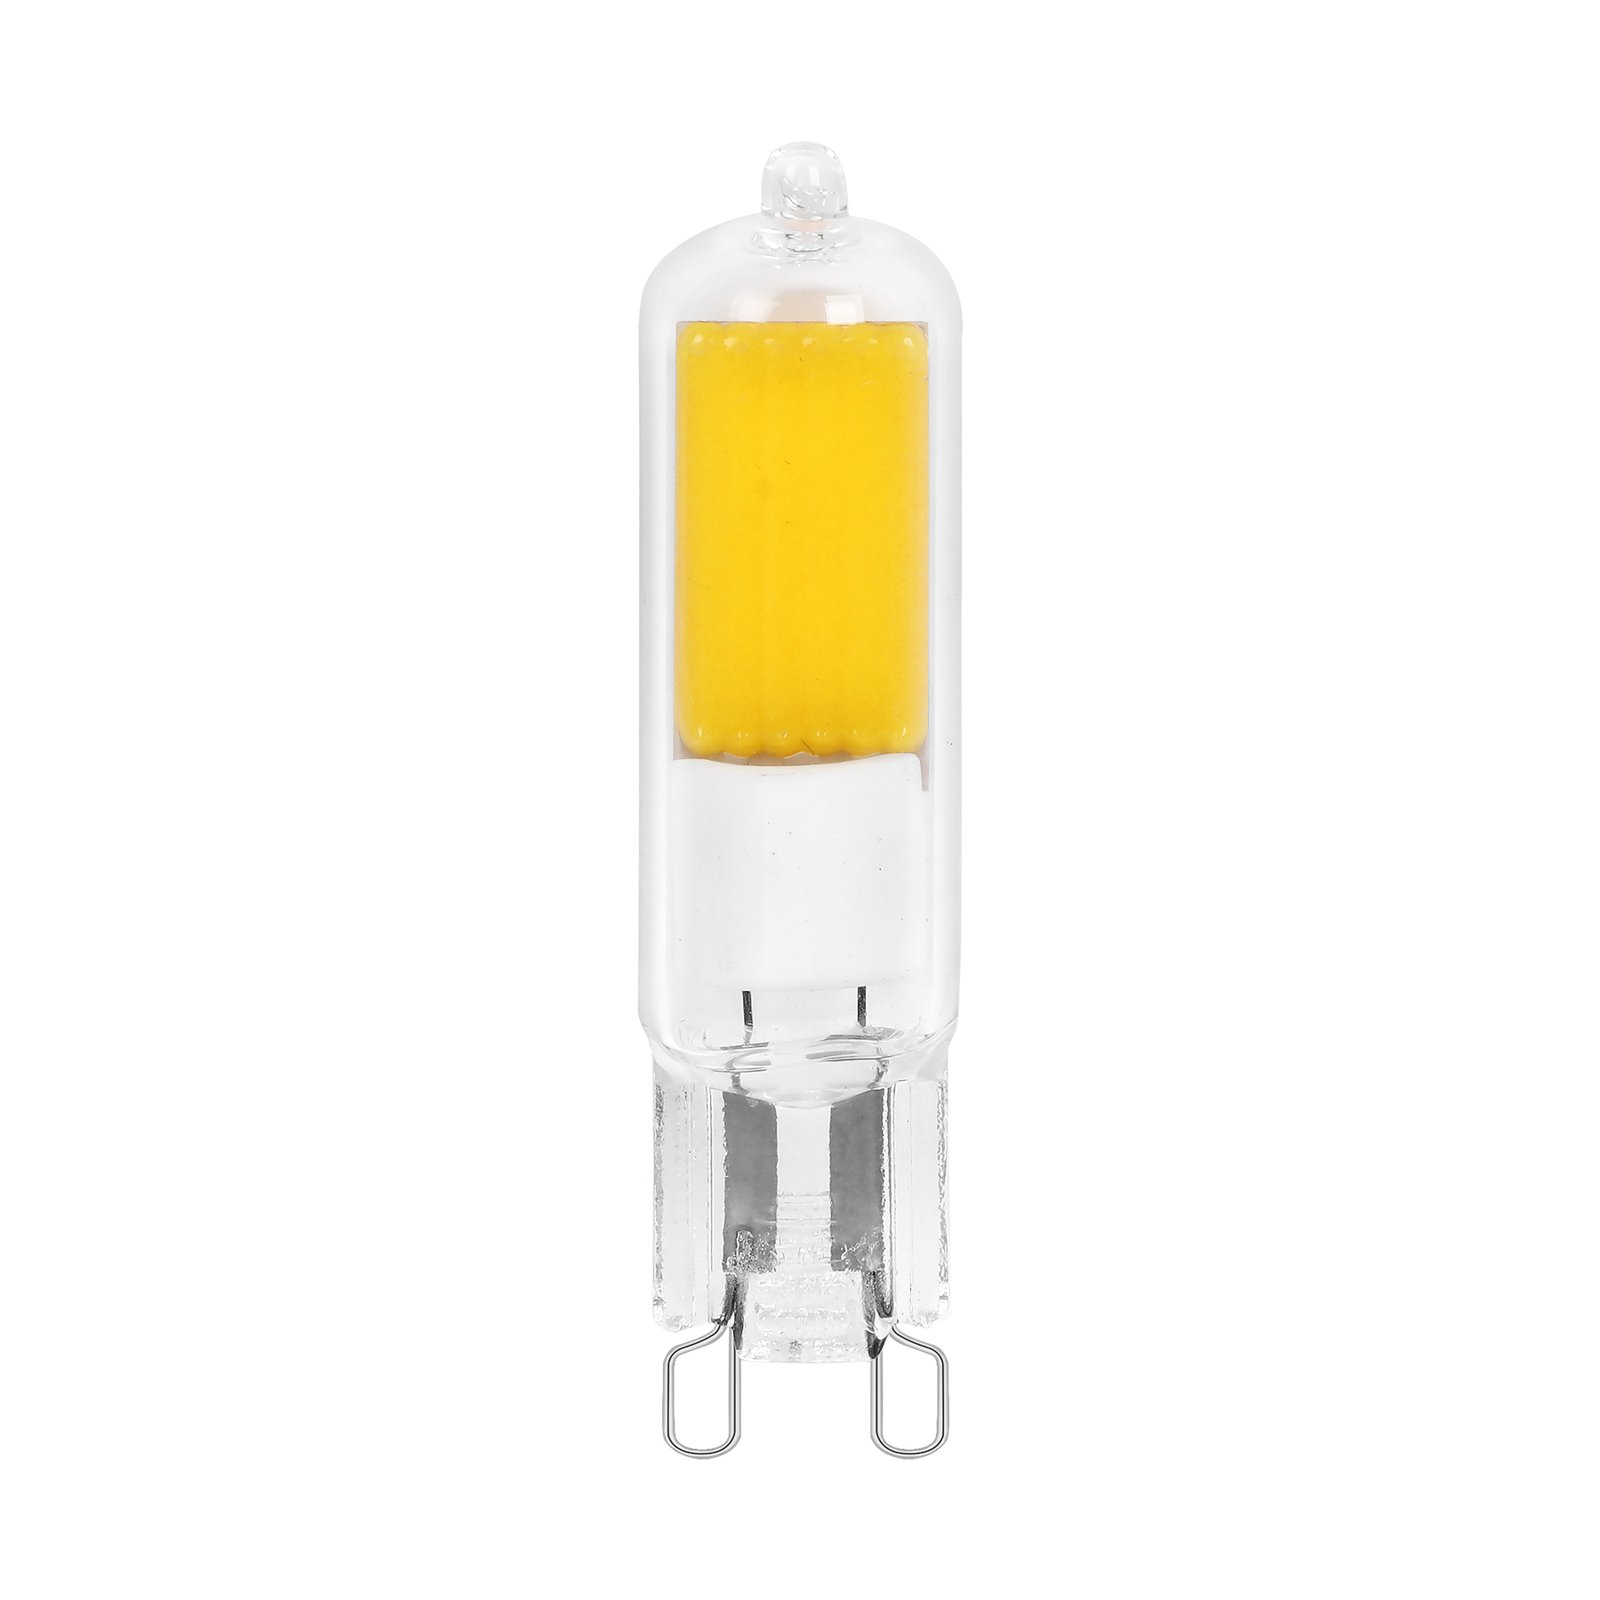 Arcchio bi-pin LED bulb, G9, 4W, 3000K, set of 3